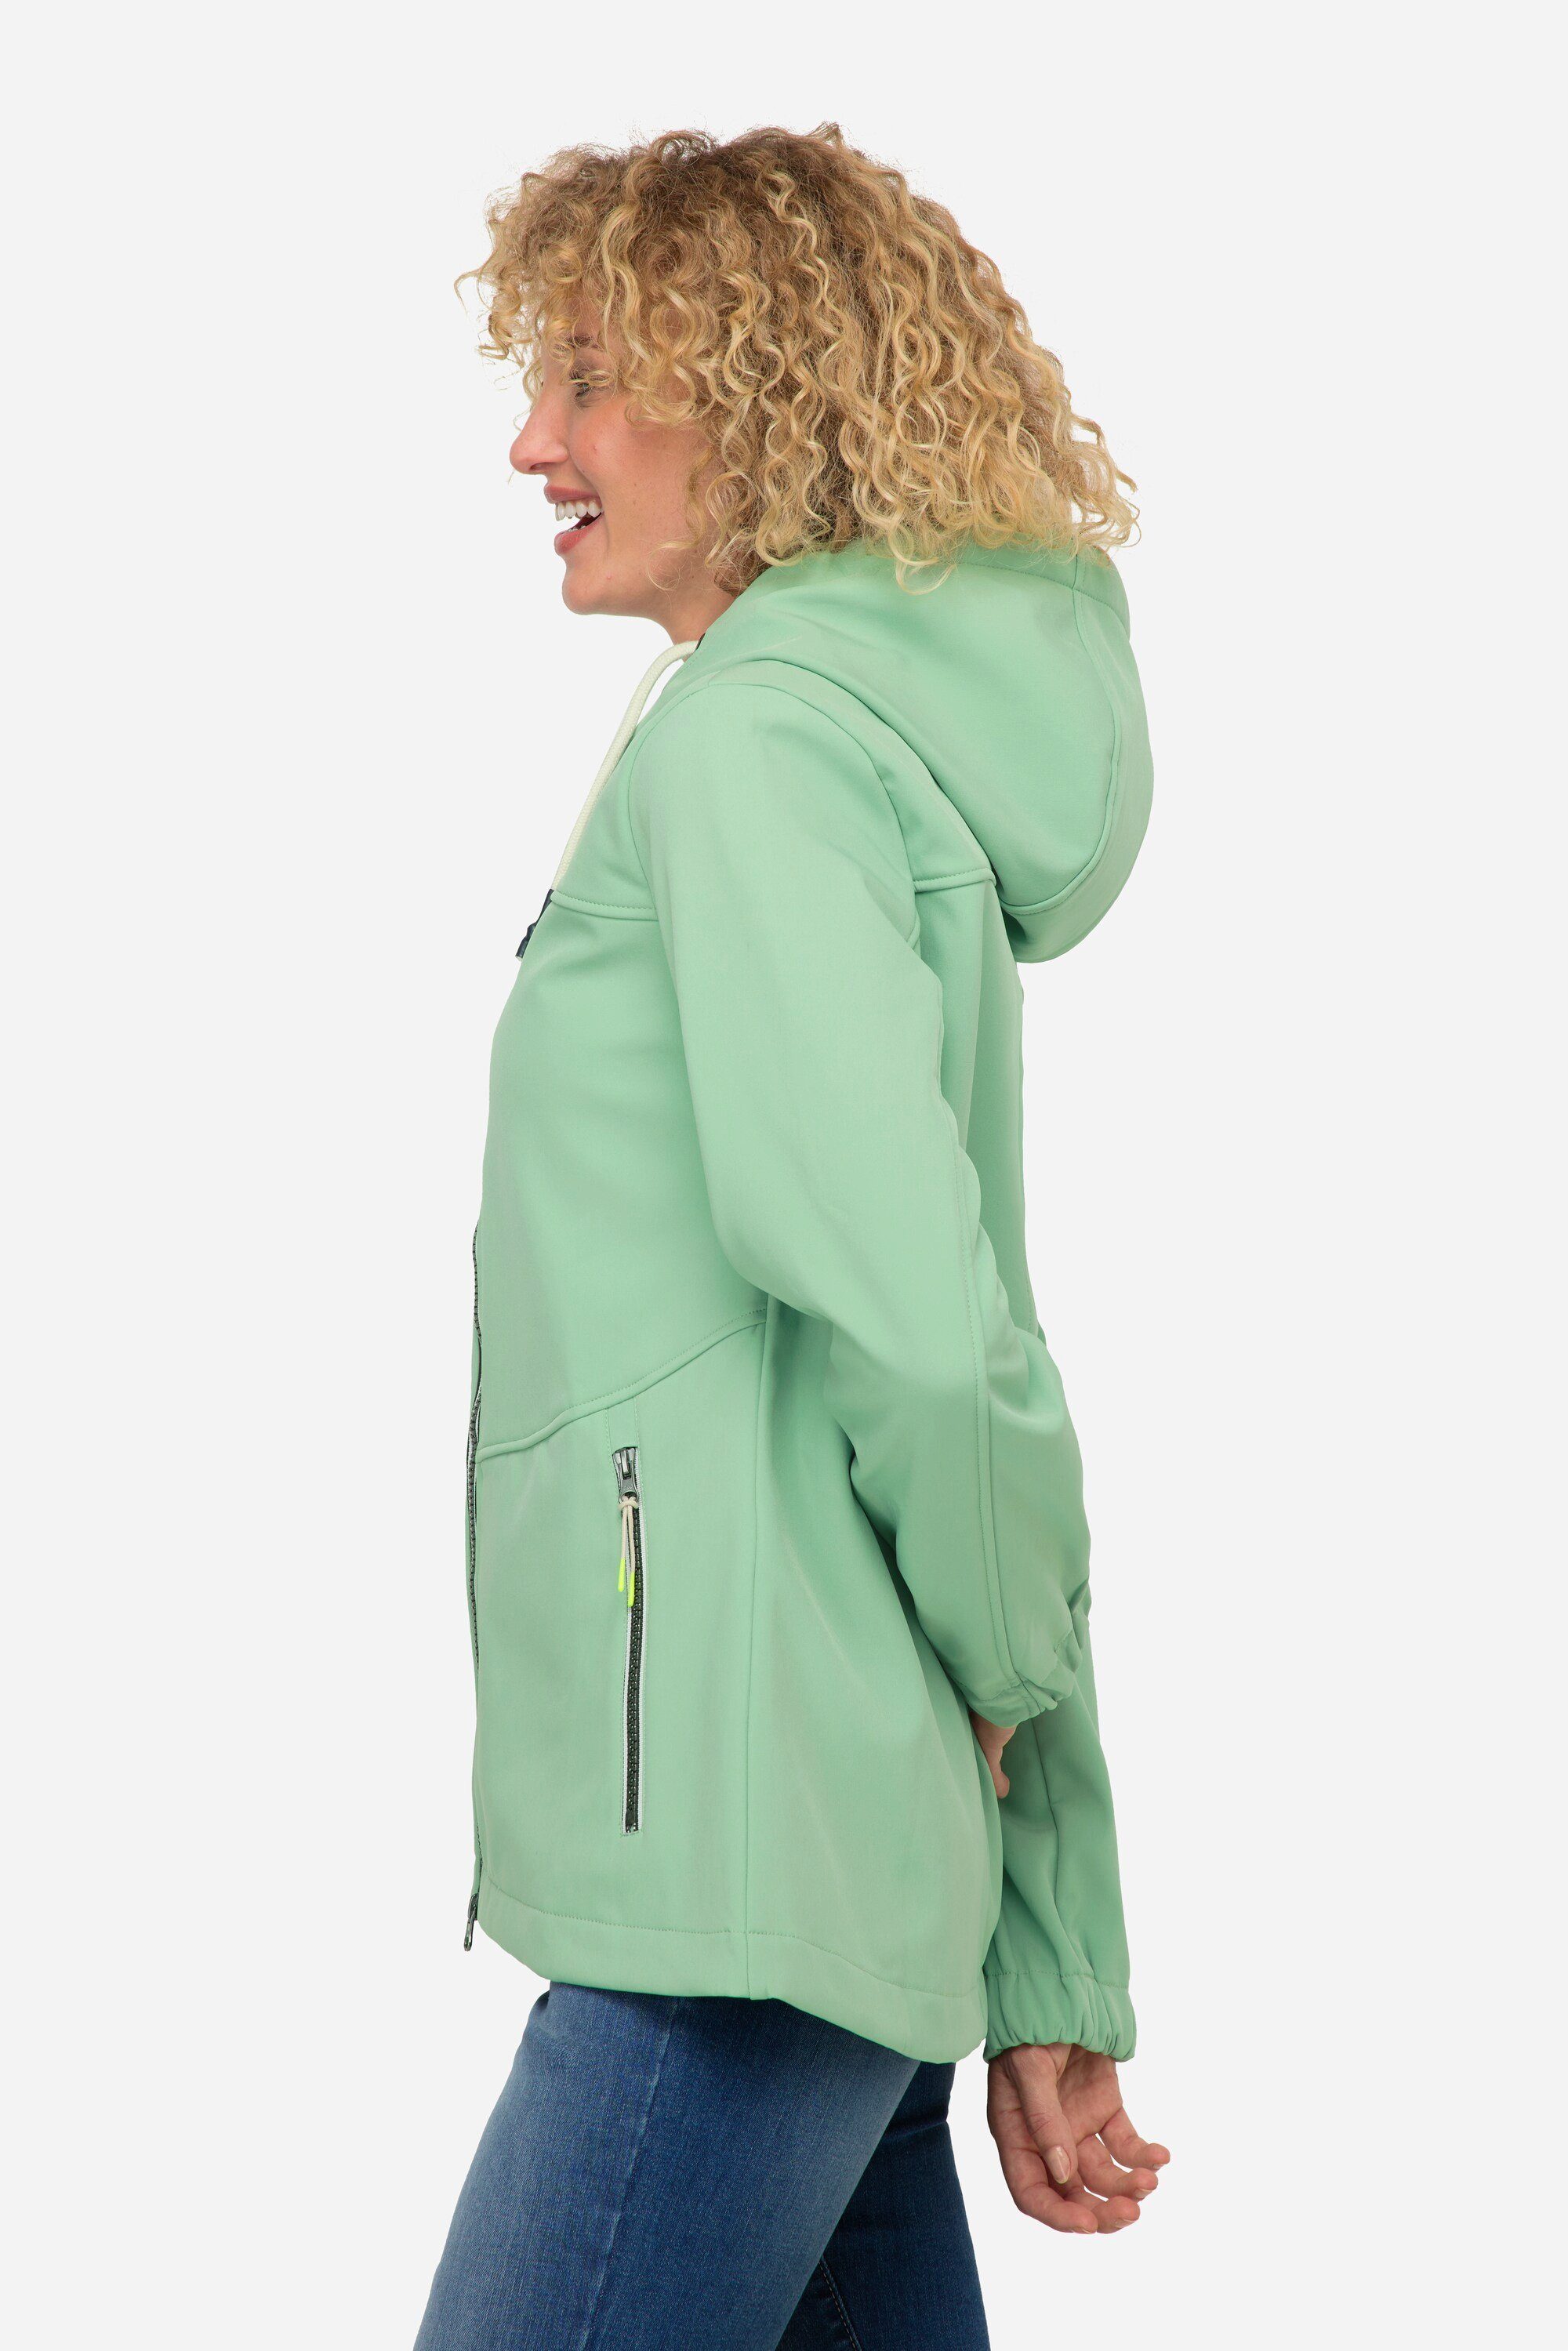 Softshell-Jacke wasserabweisend Fleece-Innenseite mintgrün Laurasøn Softshelljacke